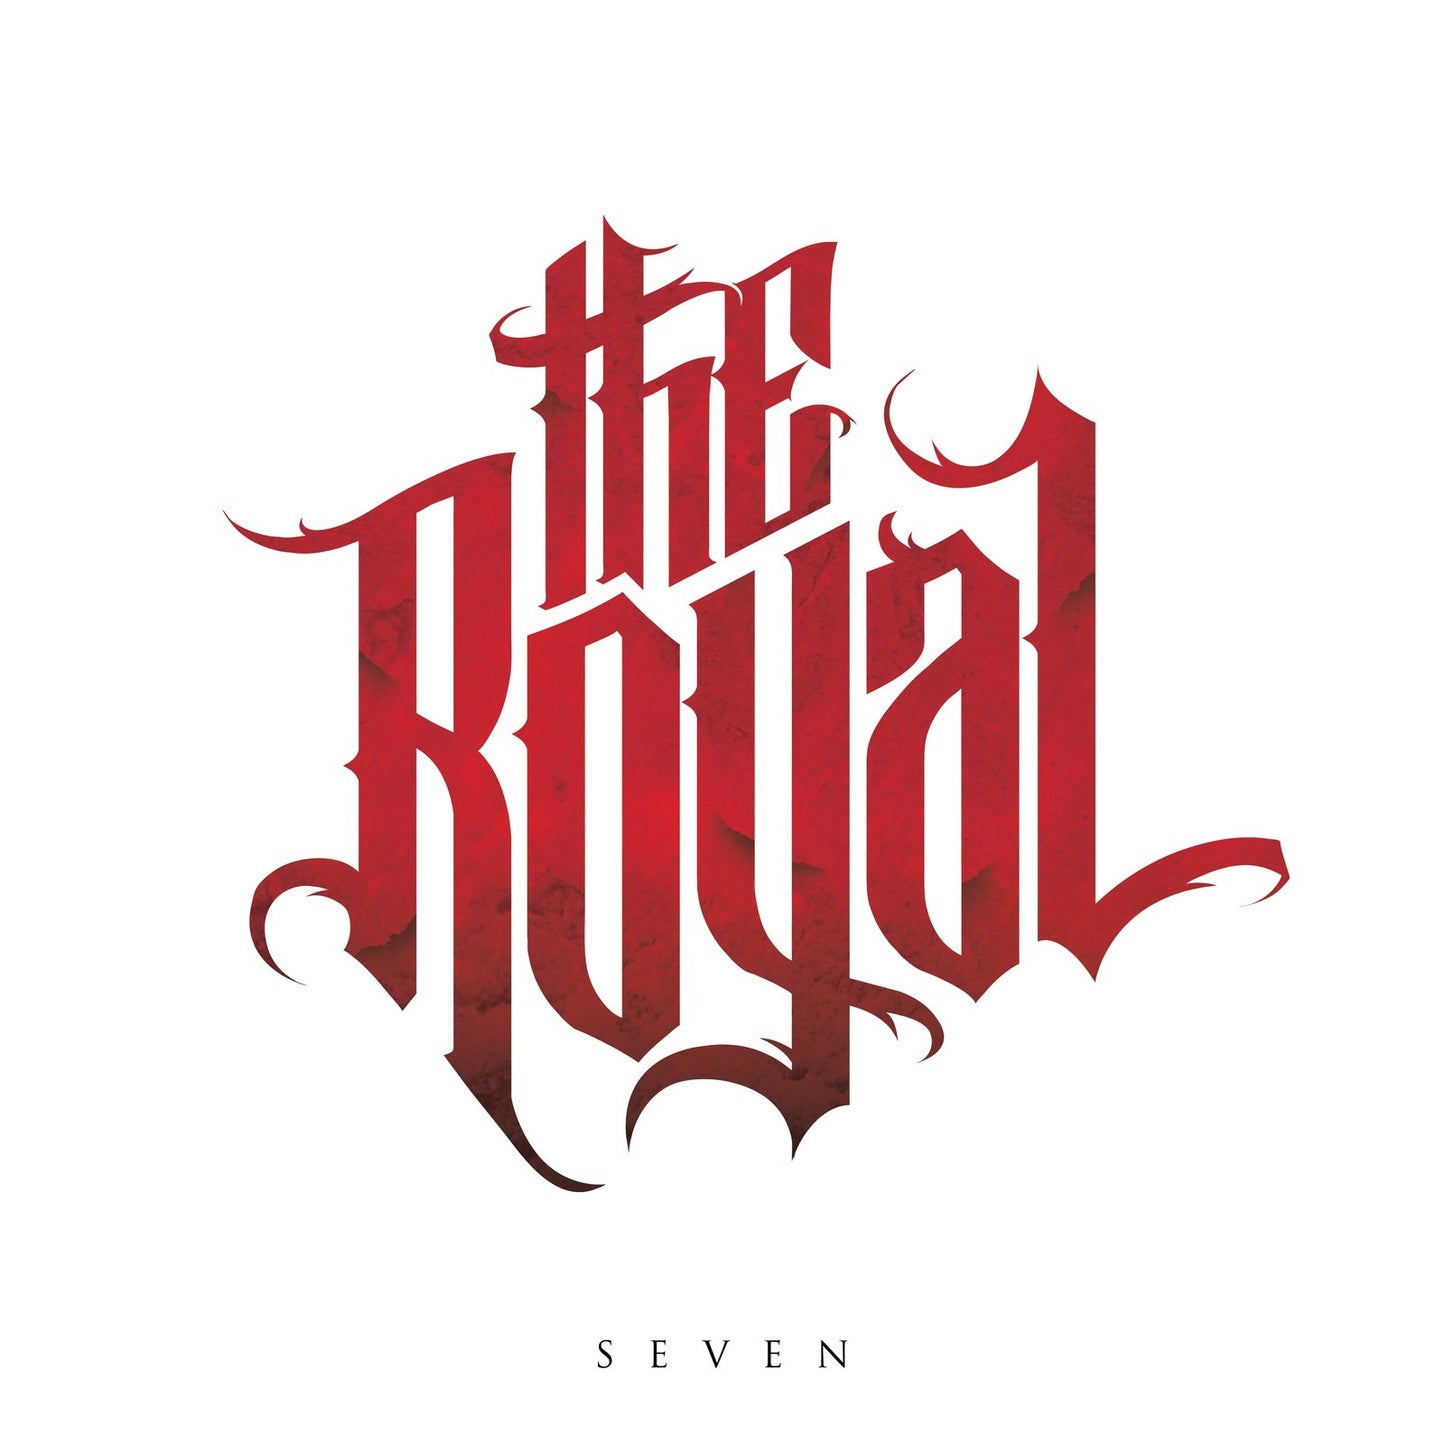 The Royal "Seven" LP